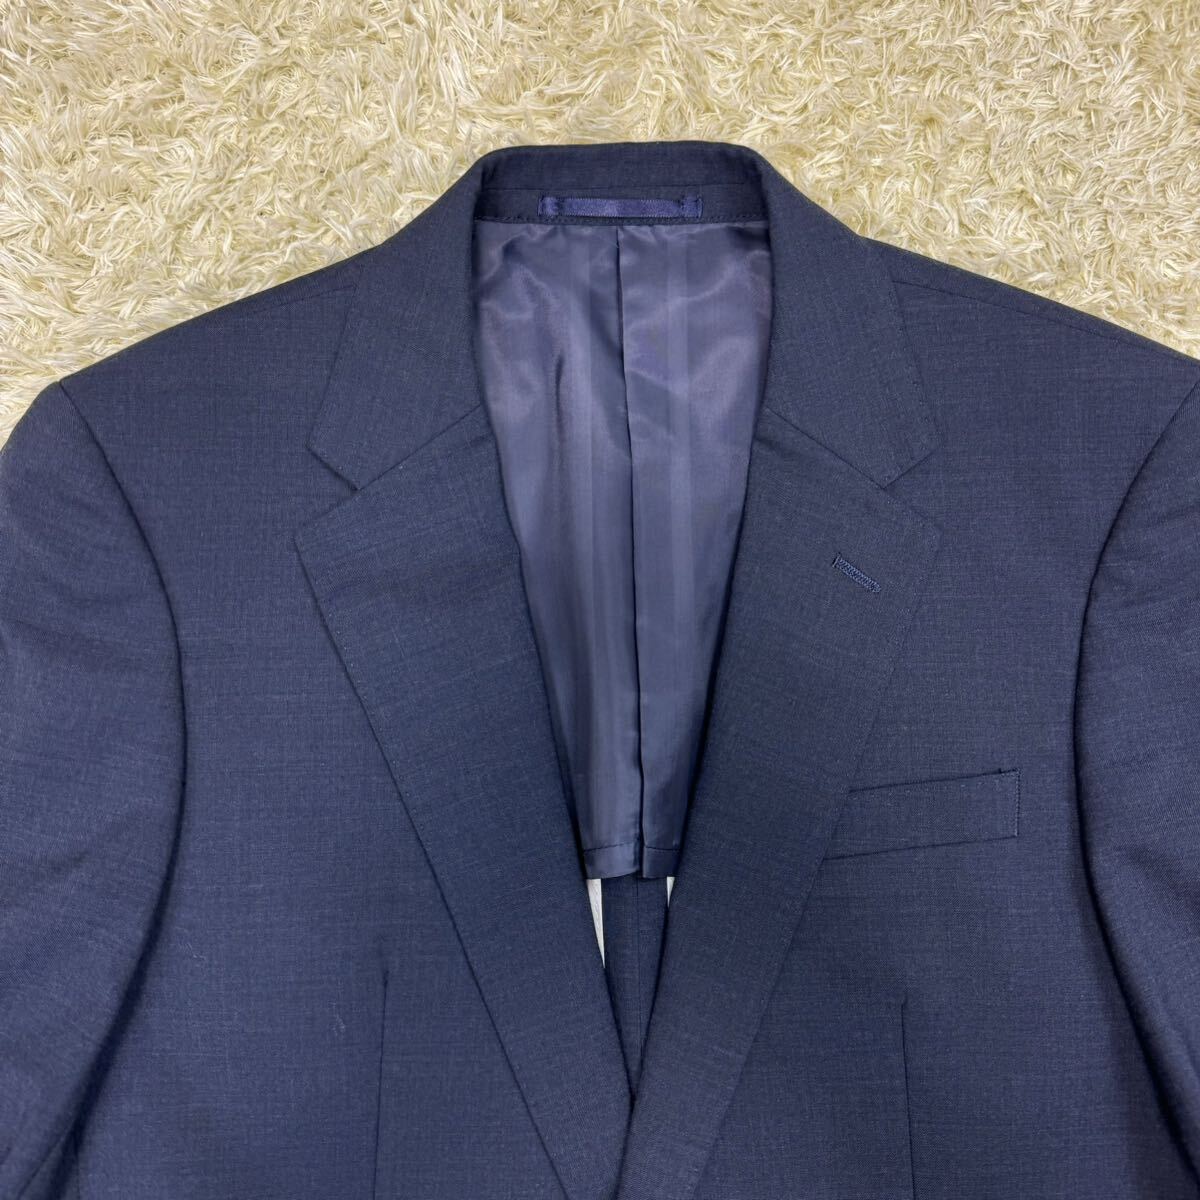 ナノユニバース 『大人の品格』 NANO UNIVERSE スーツ セットアップ ジャケット ネイビー ブルー 46 M位 ウール ビジネス 2B 紺色 背抜き_画像3